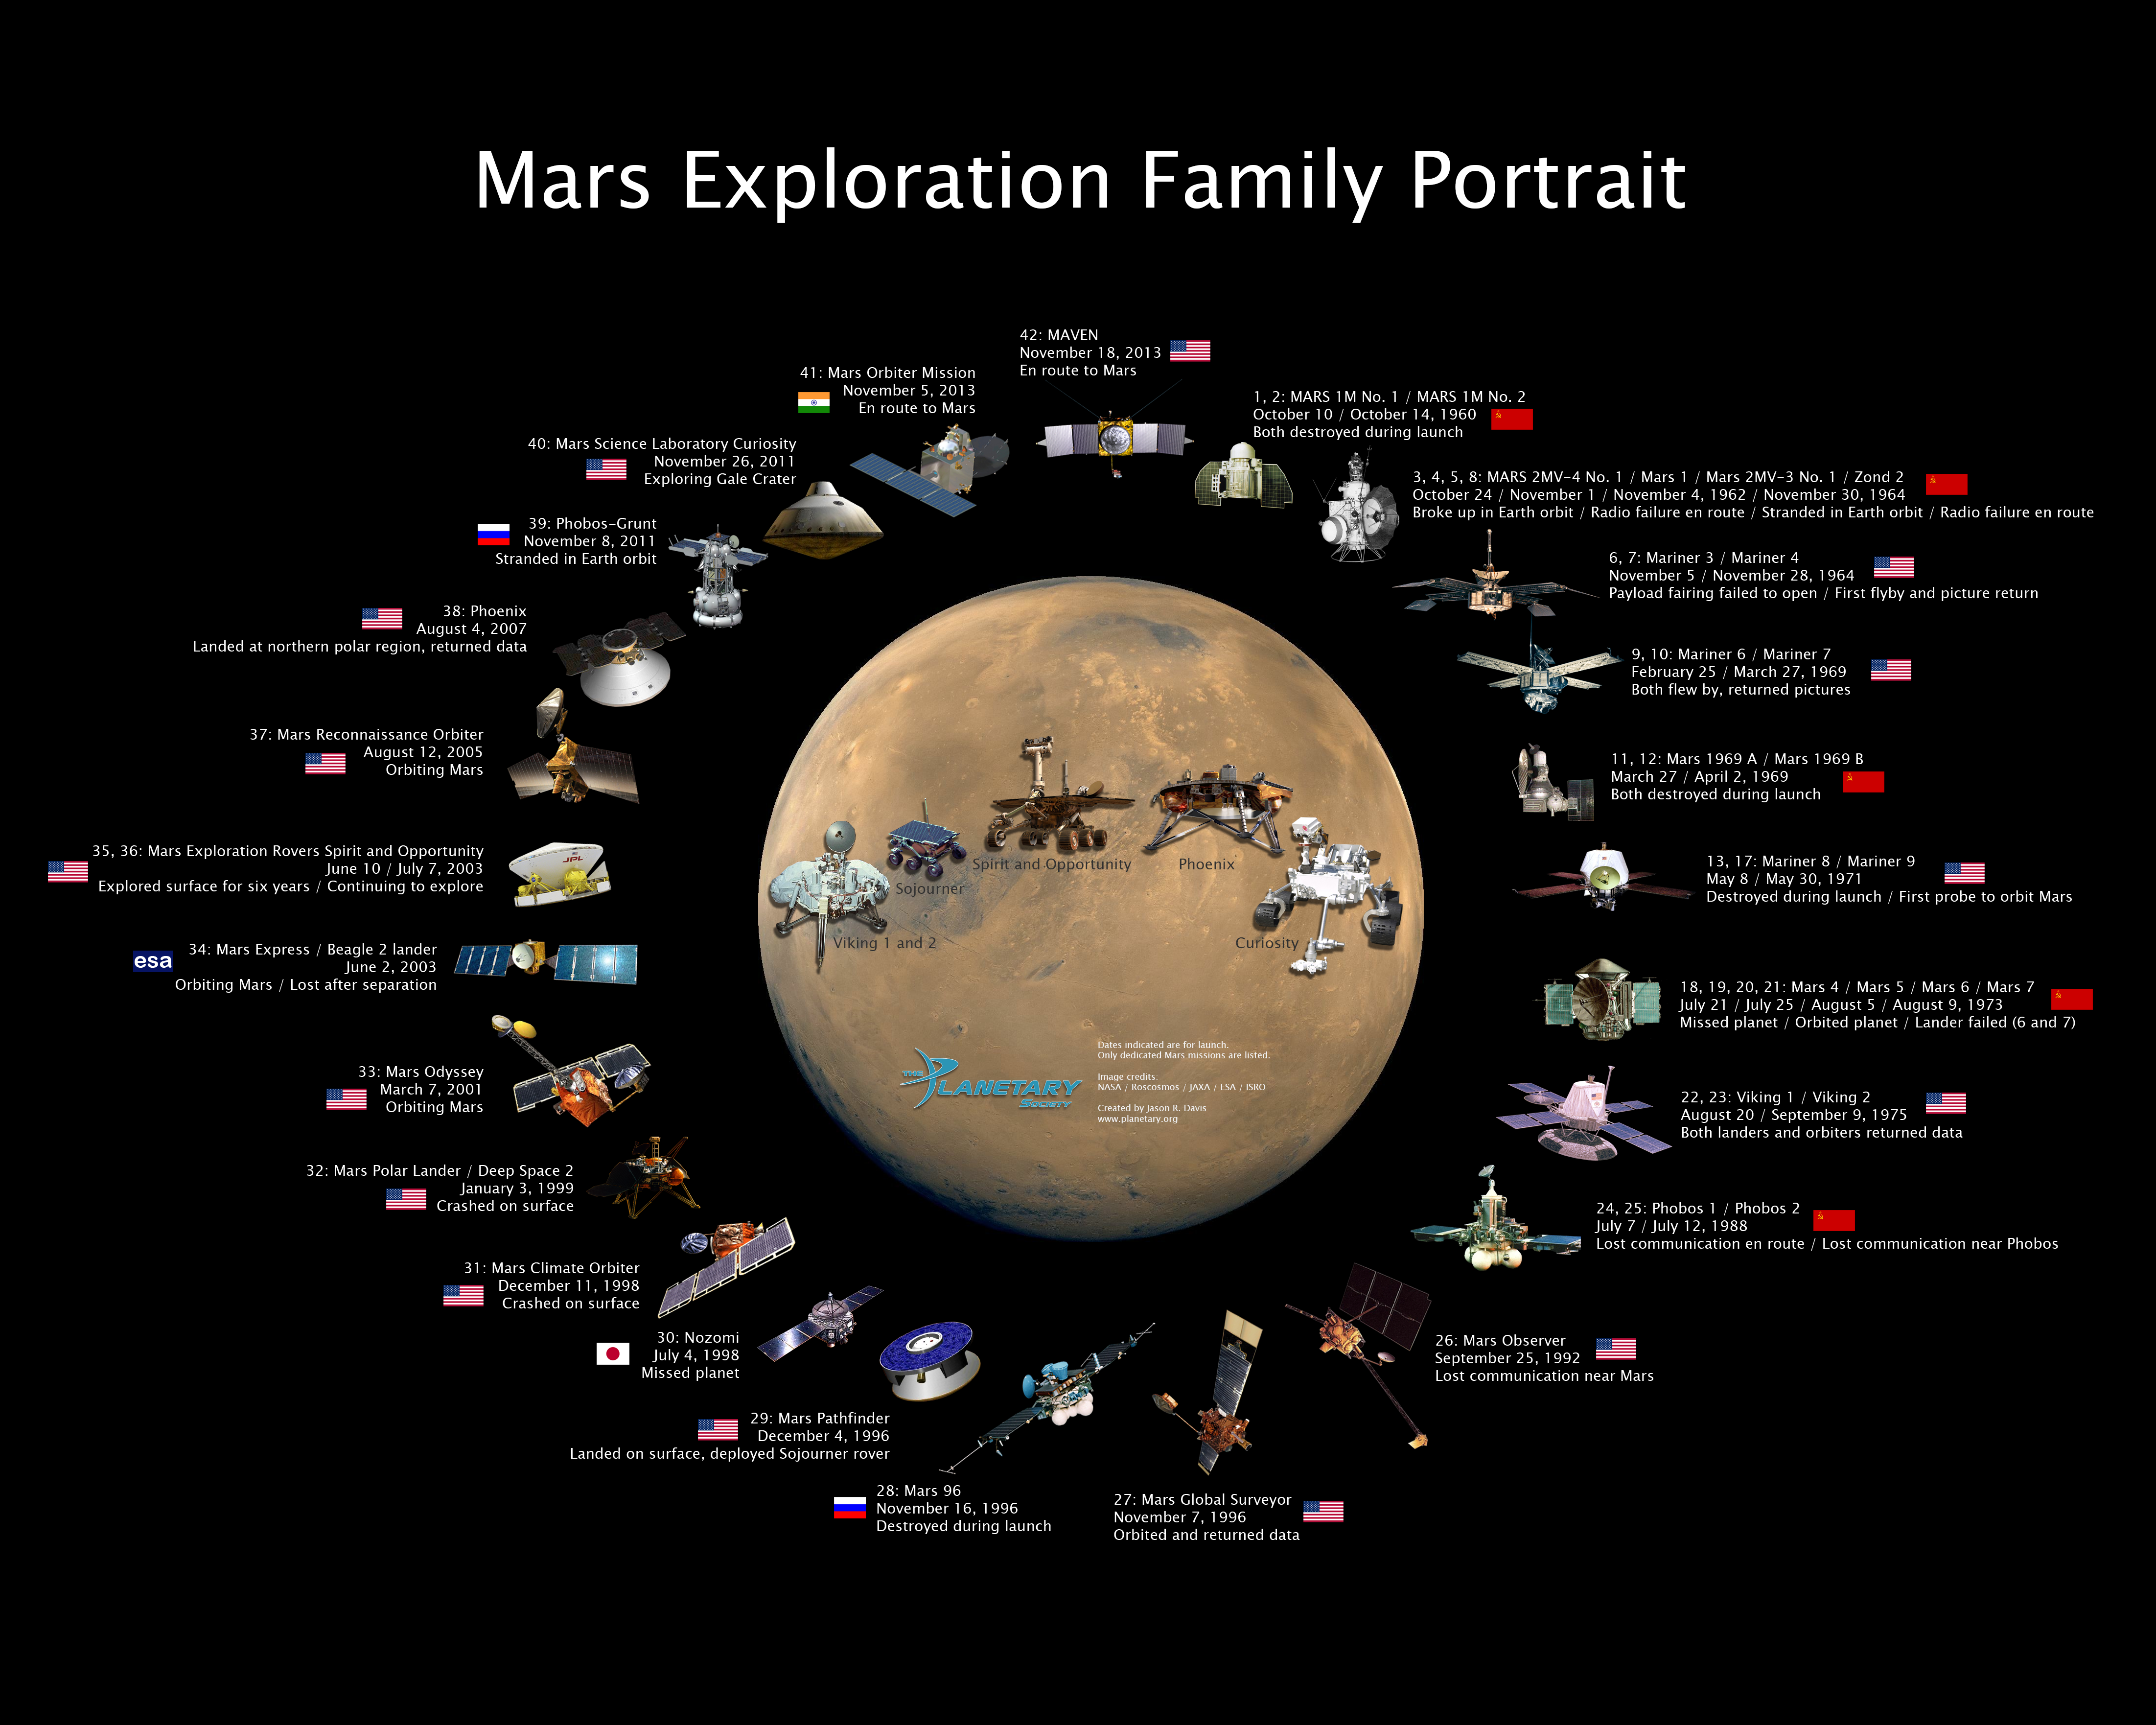 The Martian Exploration Family